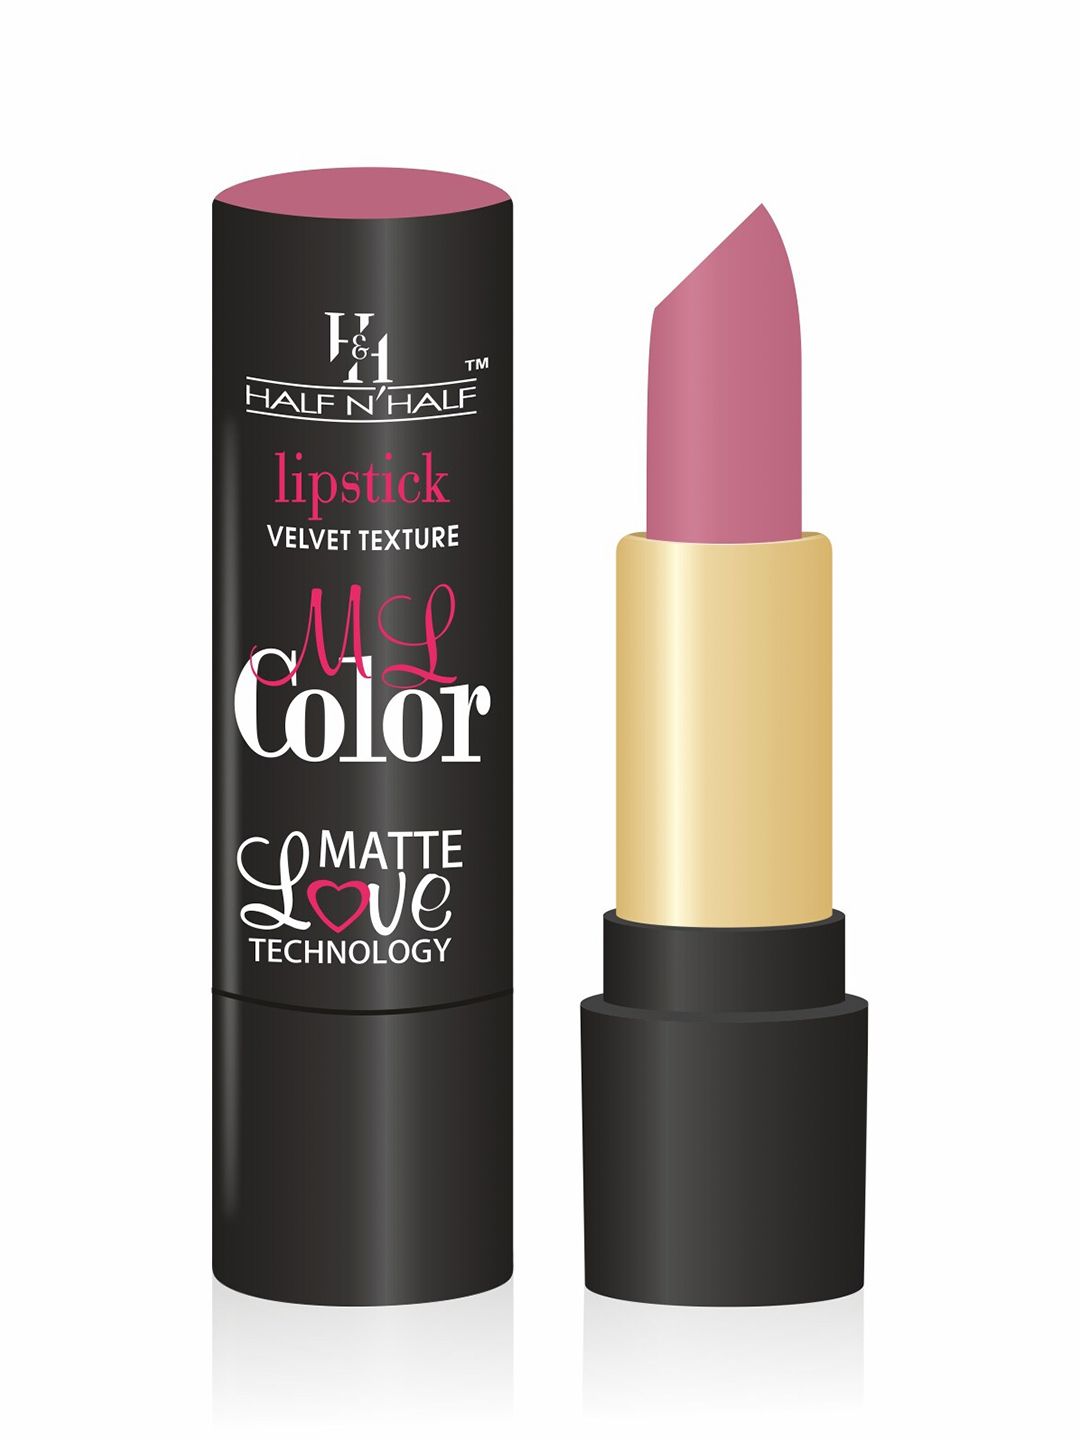 Half N Half ML Colour Velvet Texture Matte Love Technology Lipstick 3.8 g - Peach Twist Price in India